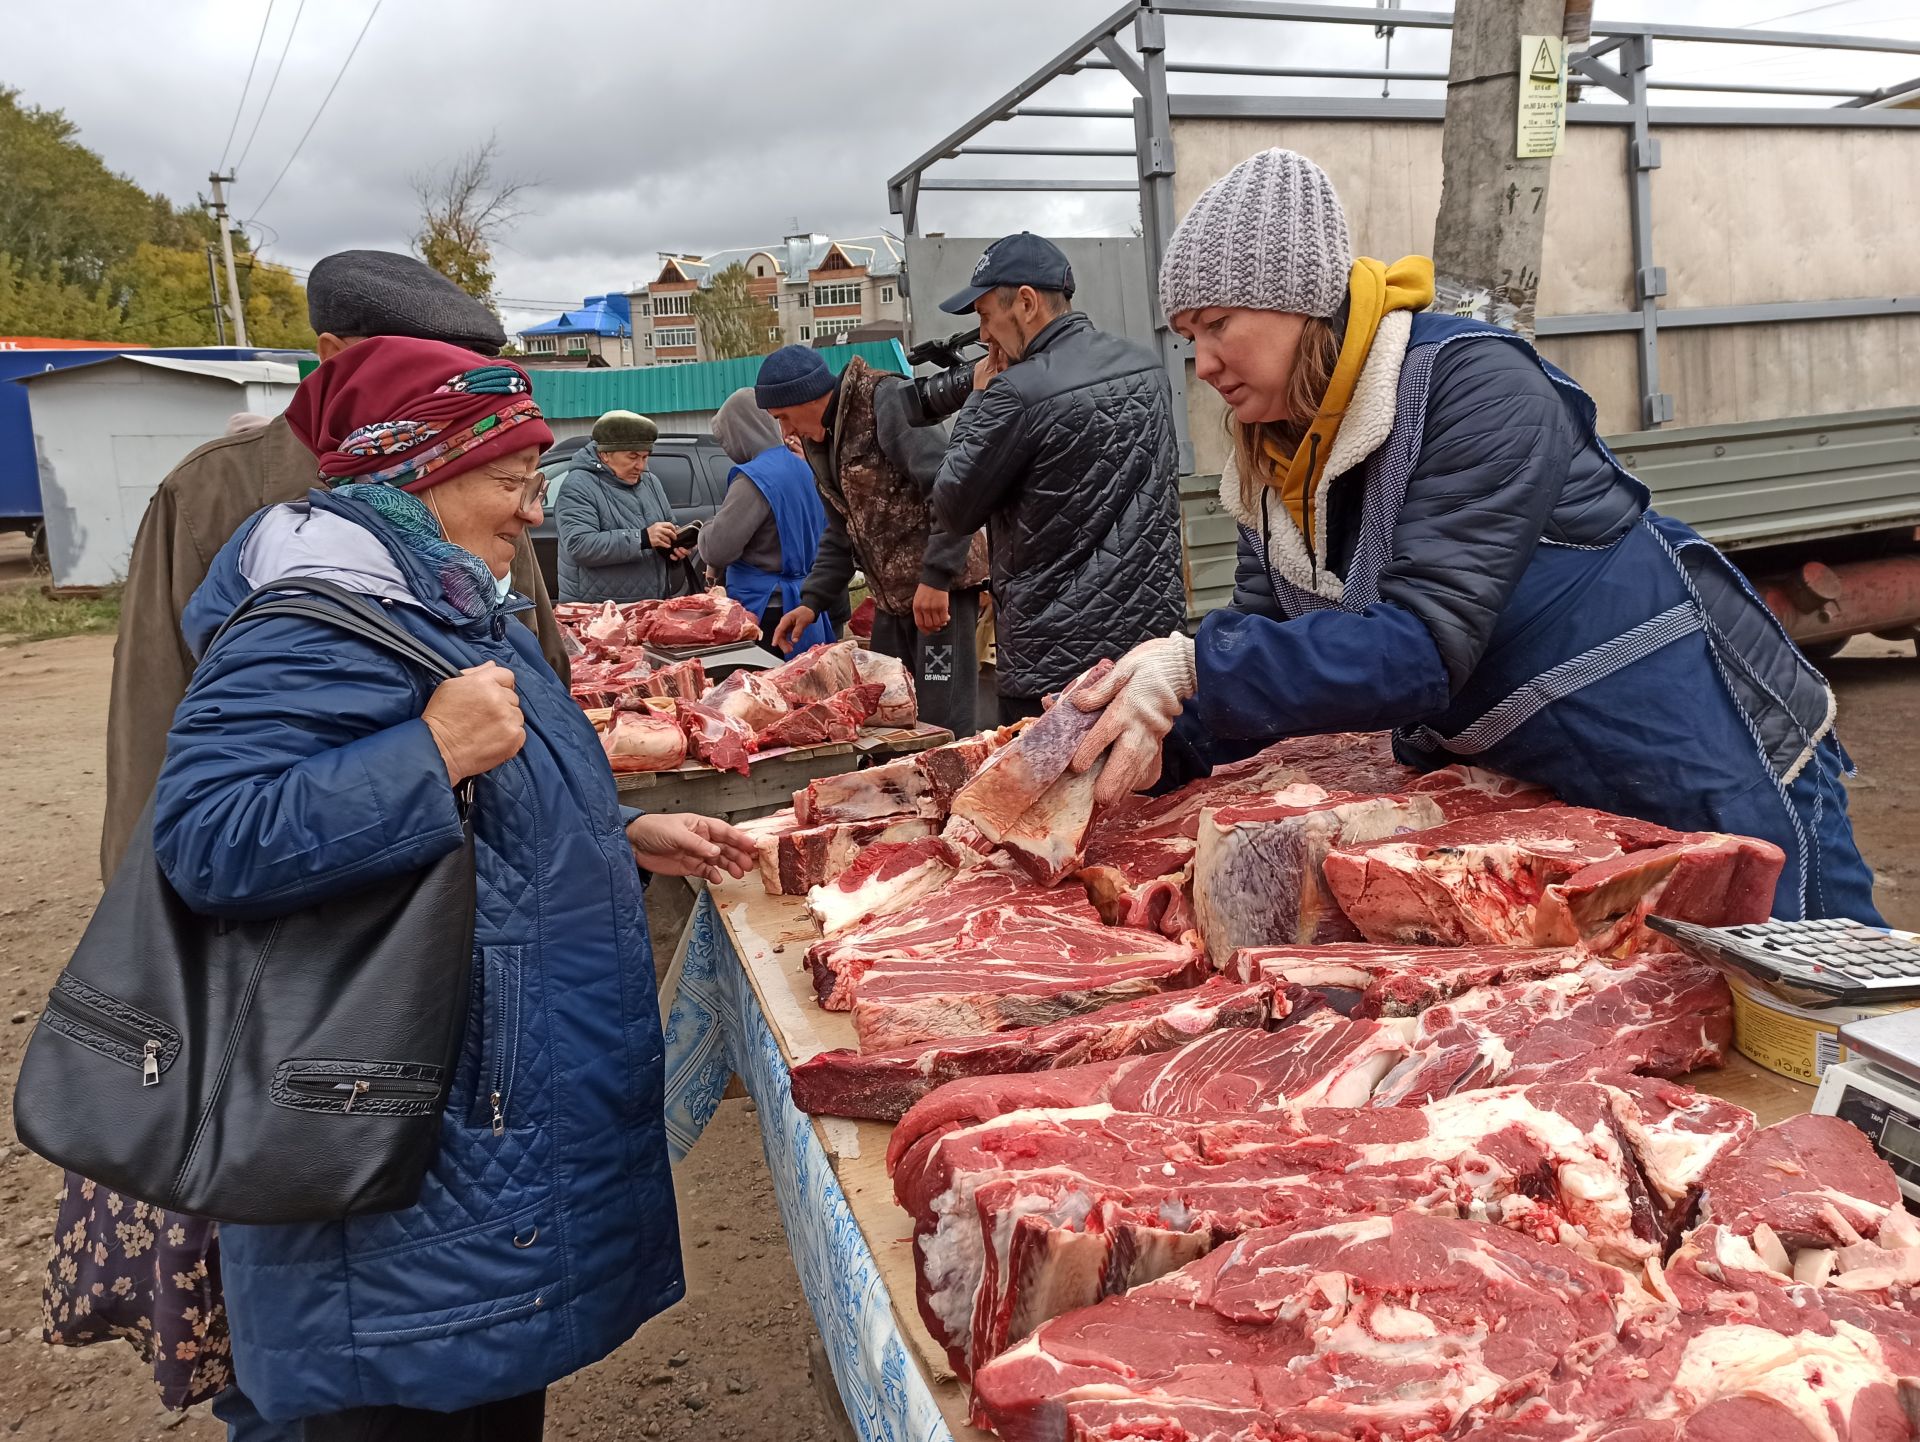 На сельхозярмарке в Чистополе особым спросом пользовались мясо и овощи